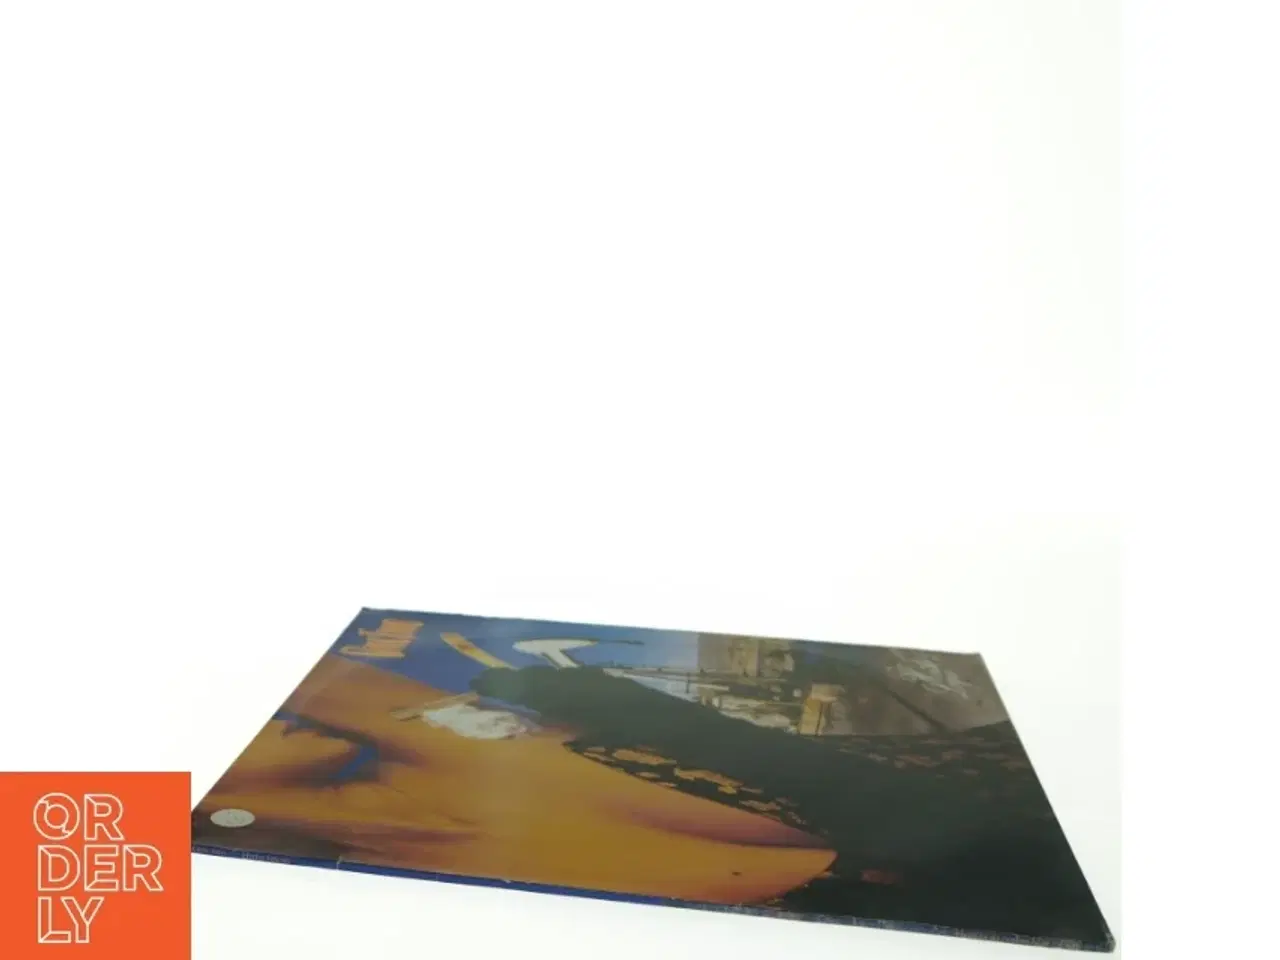 OneTwo - Hvide Løgne vinylplade fra Medley Records (str. 31 x 31 cm) |  Slangerup - GulogGratis.dk